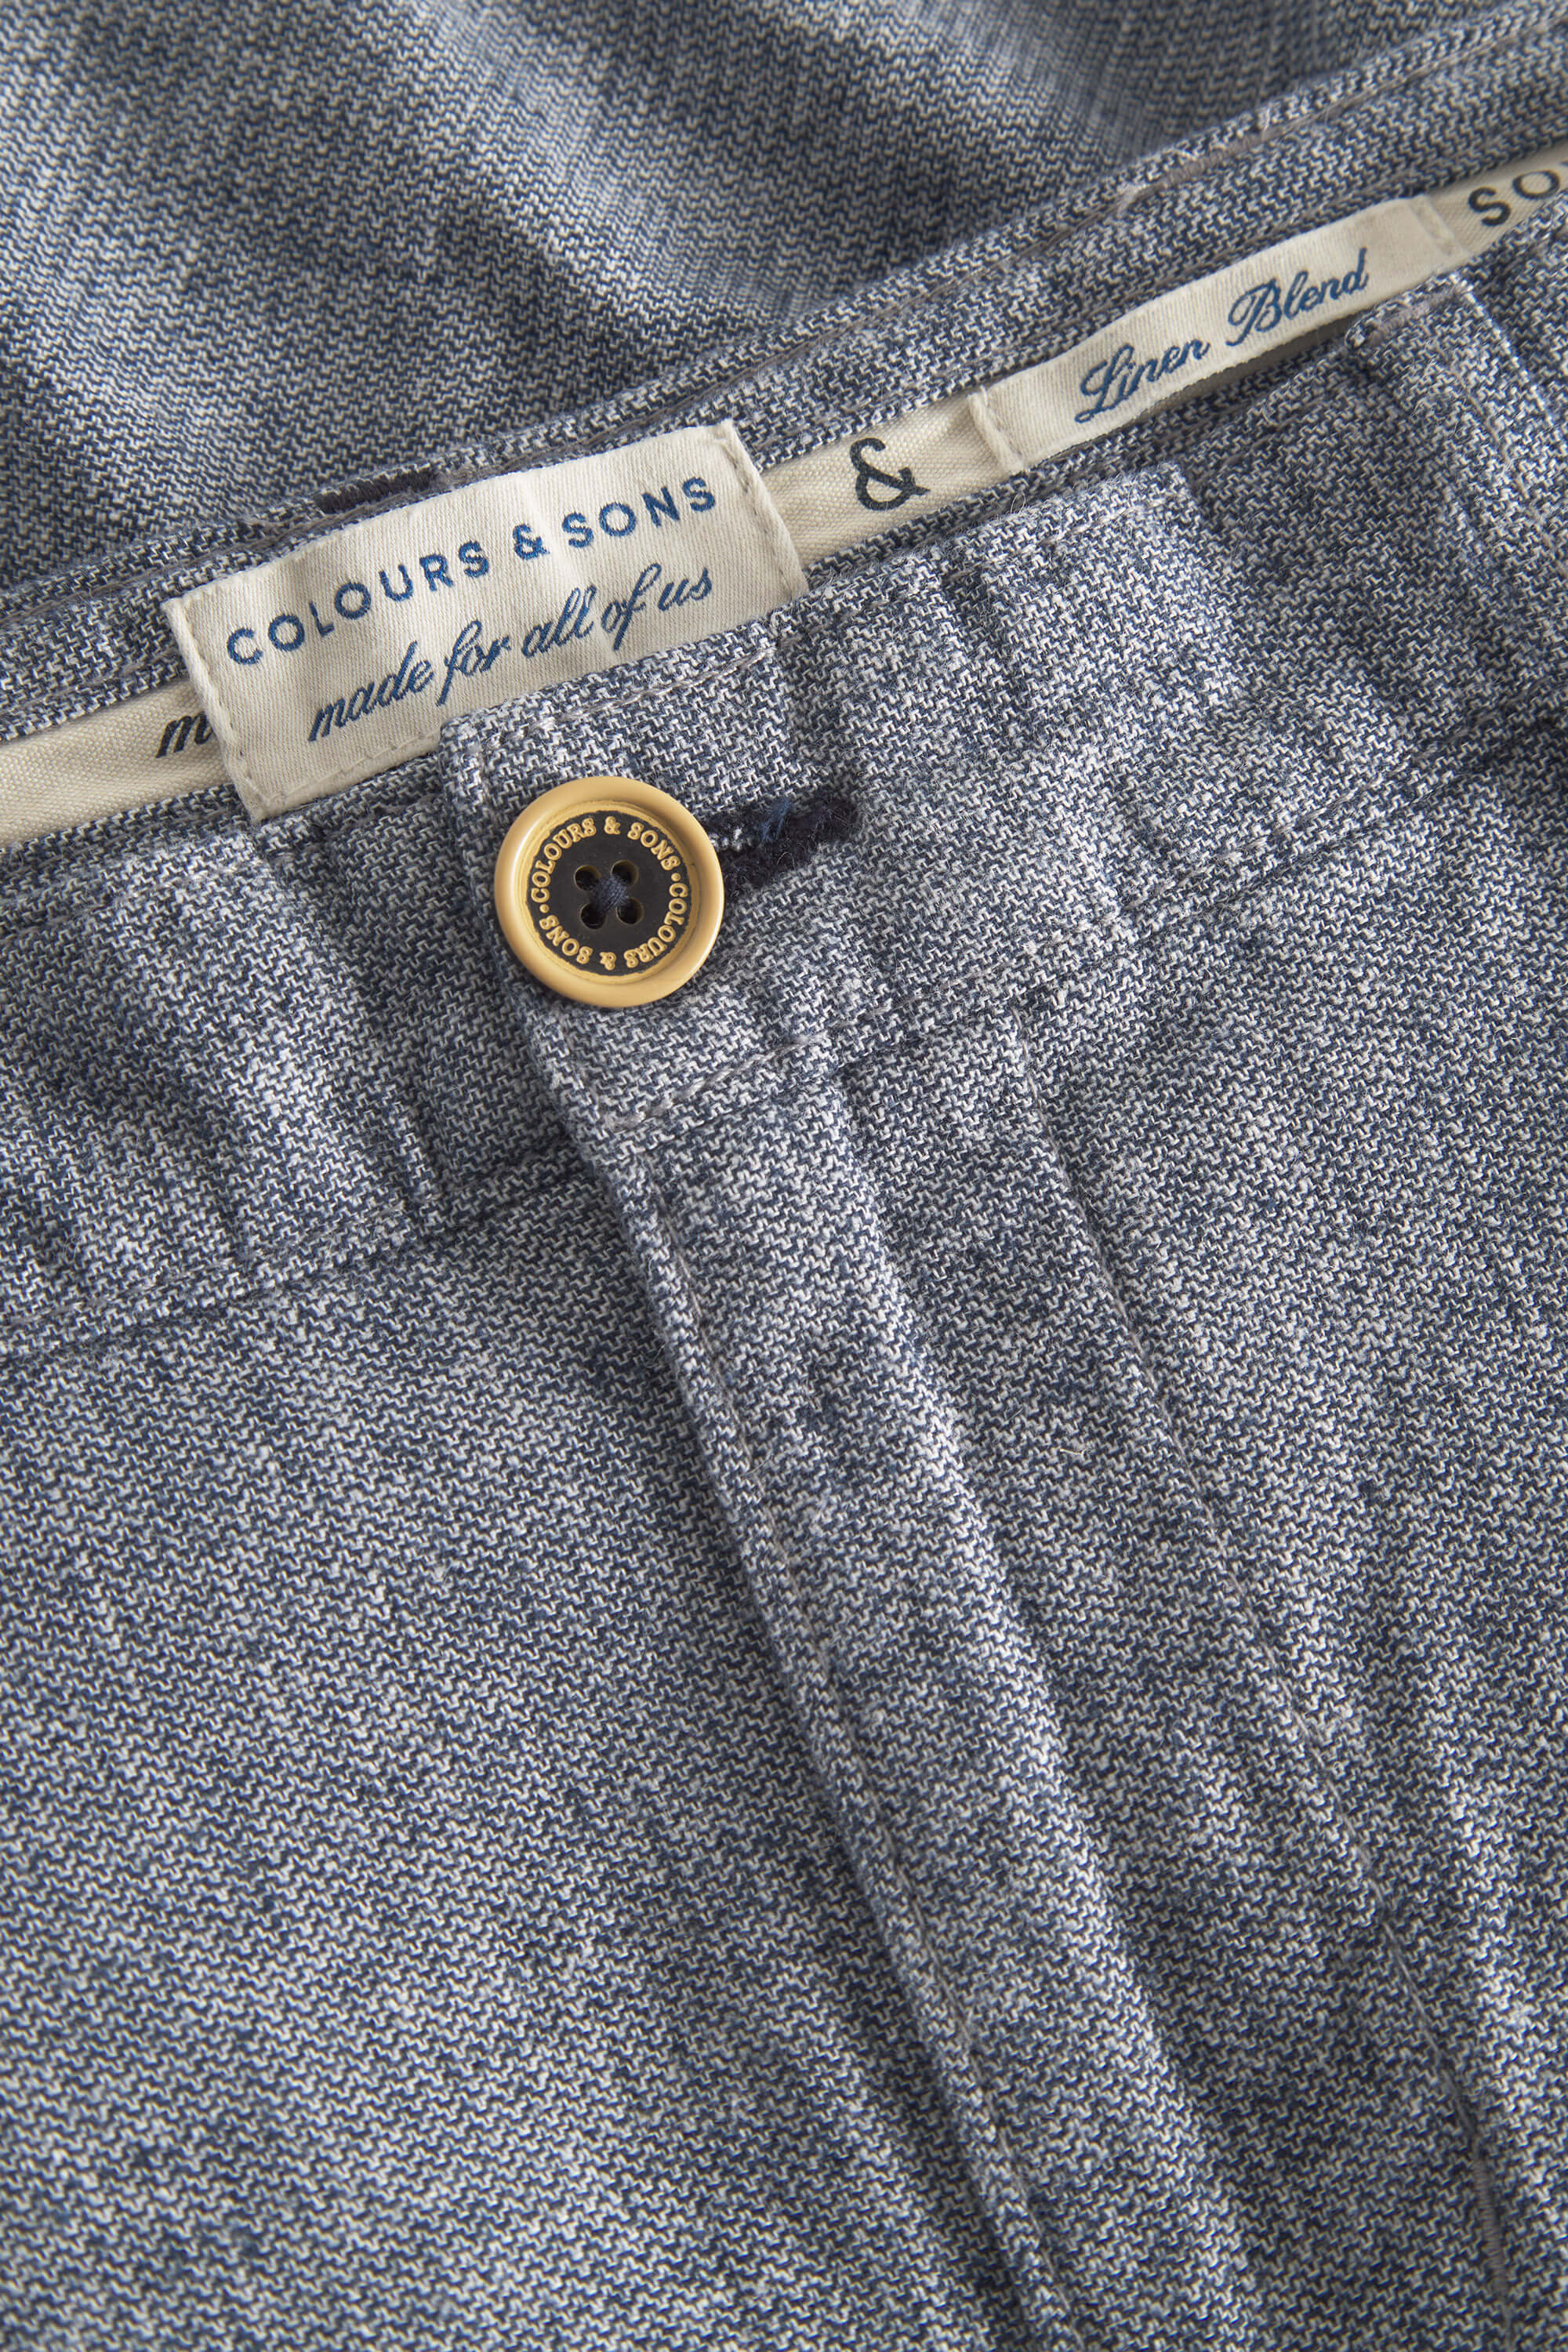 Herren Shorts, blau, 55% Leinen 45% Baumwolle von Colours & Sons